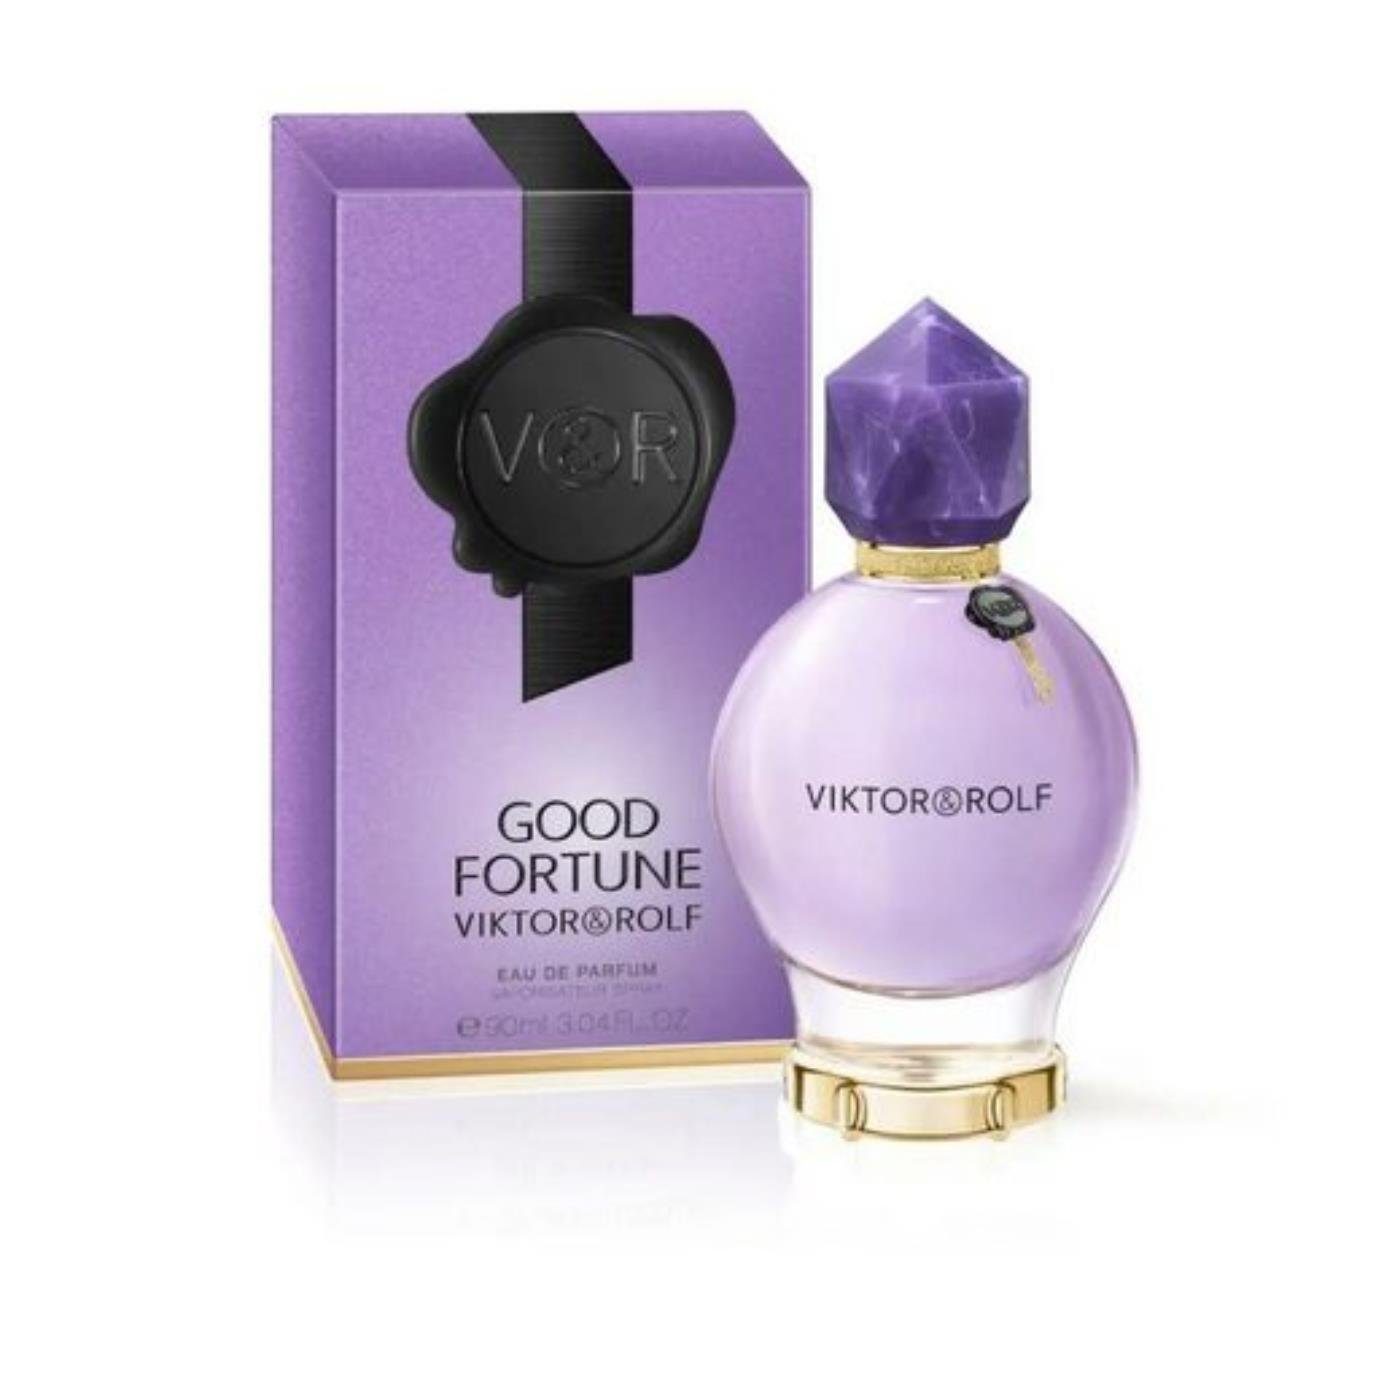 & Rolf & Eau Good Eau Viktor Parfum Parfum de de Fortune Rolf Viktor